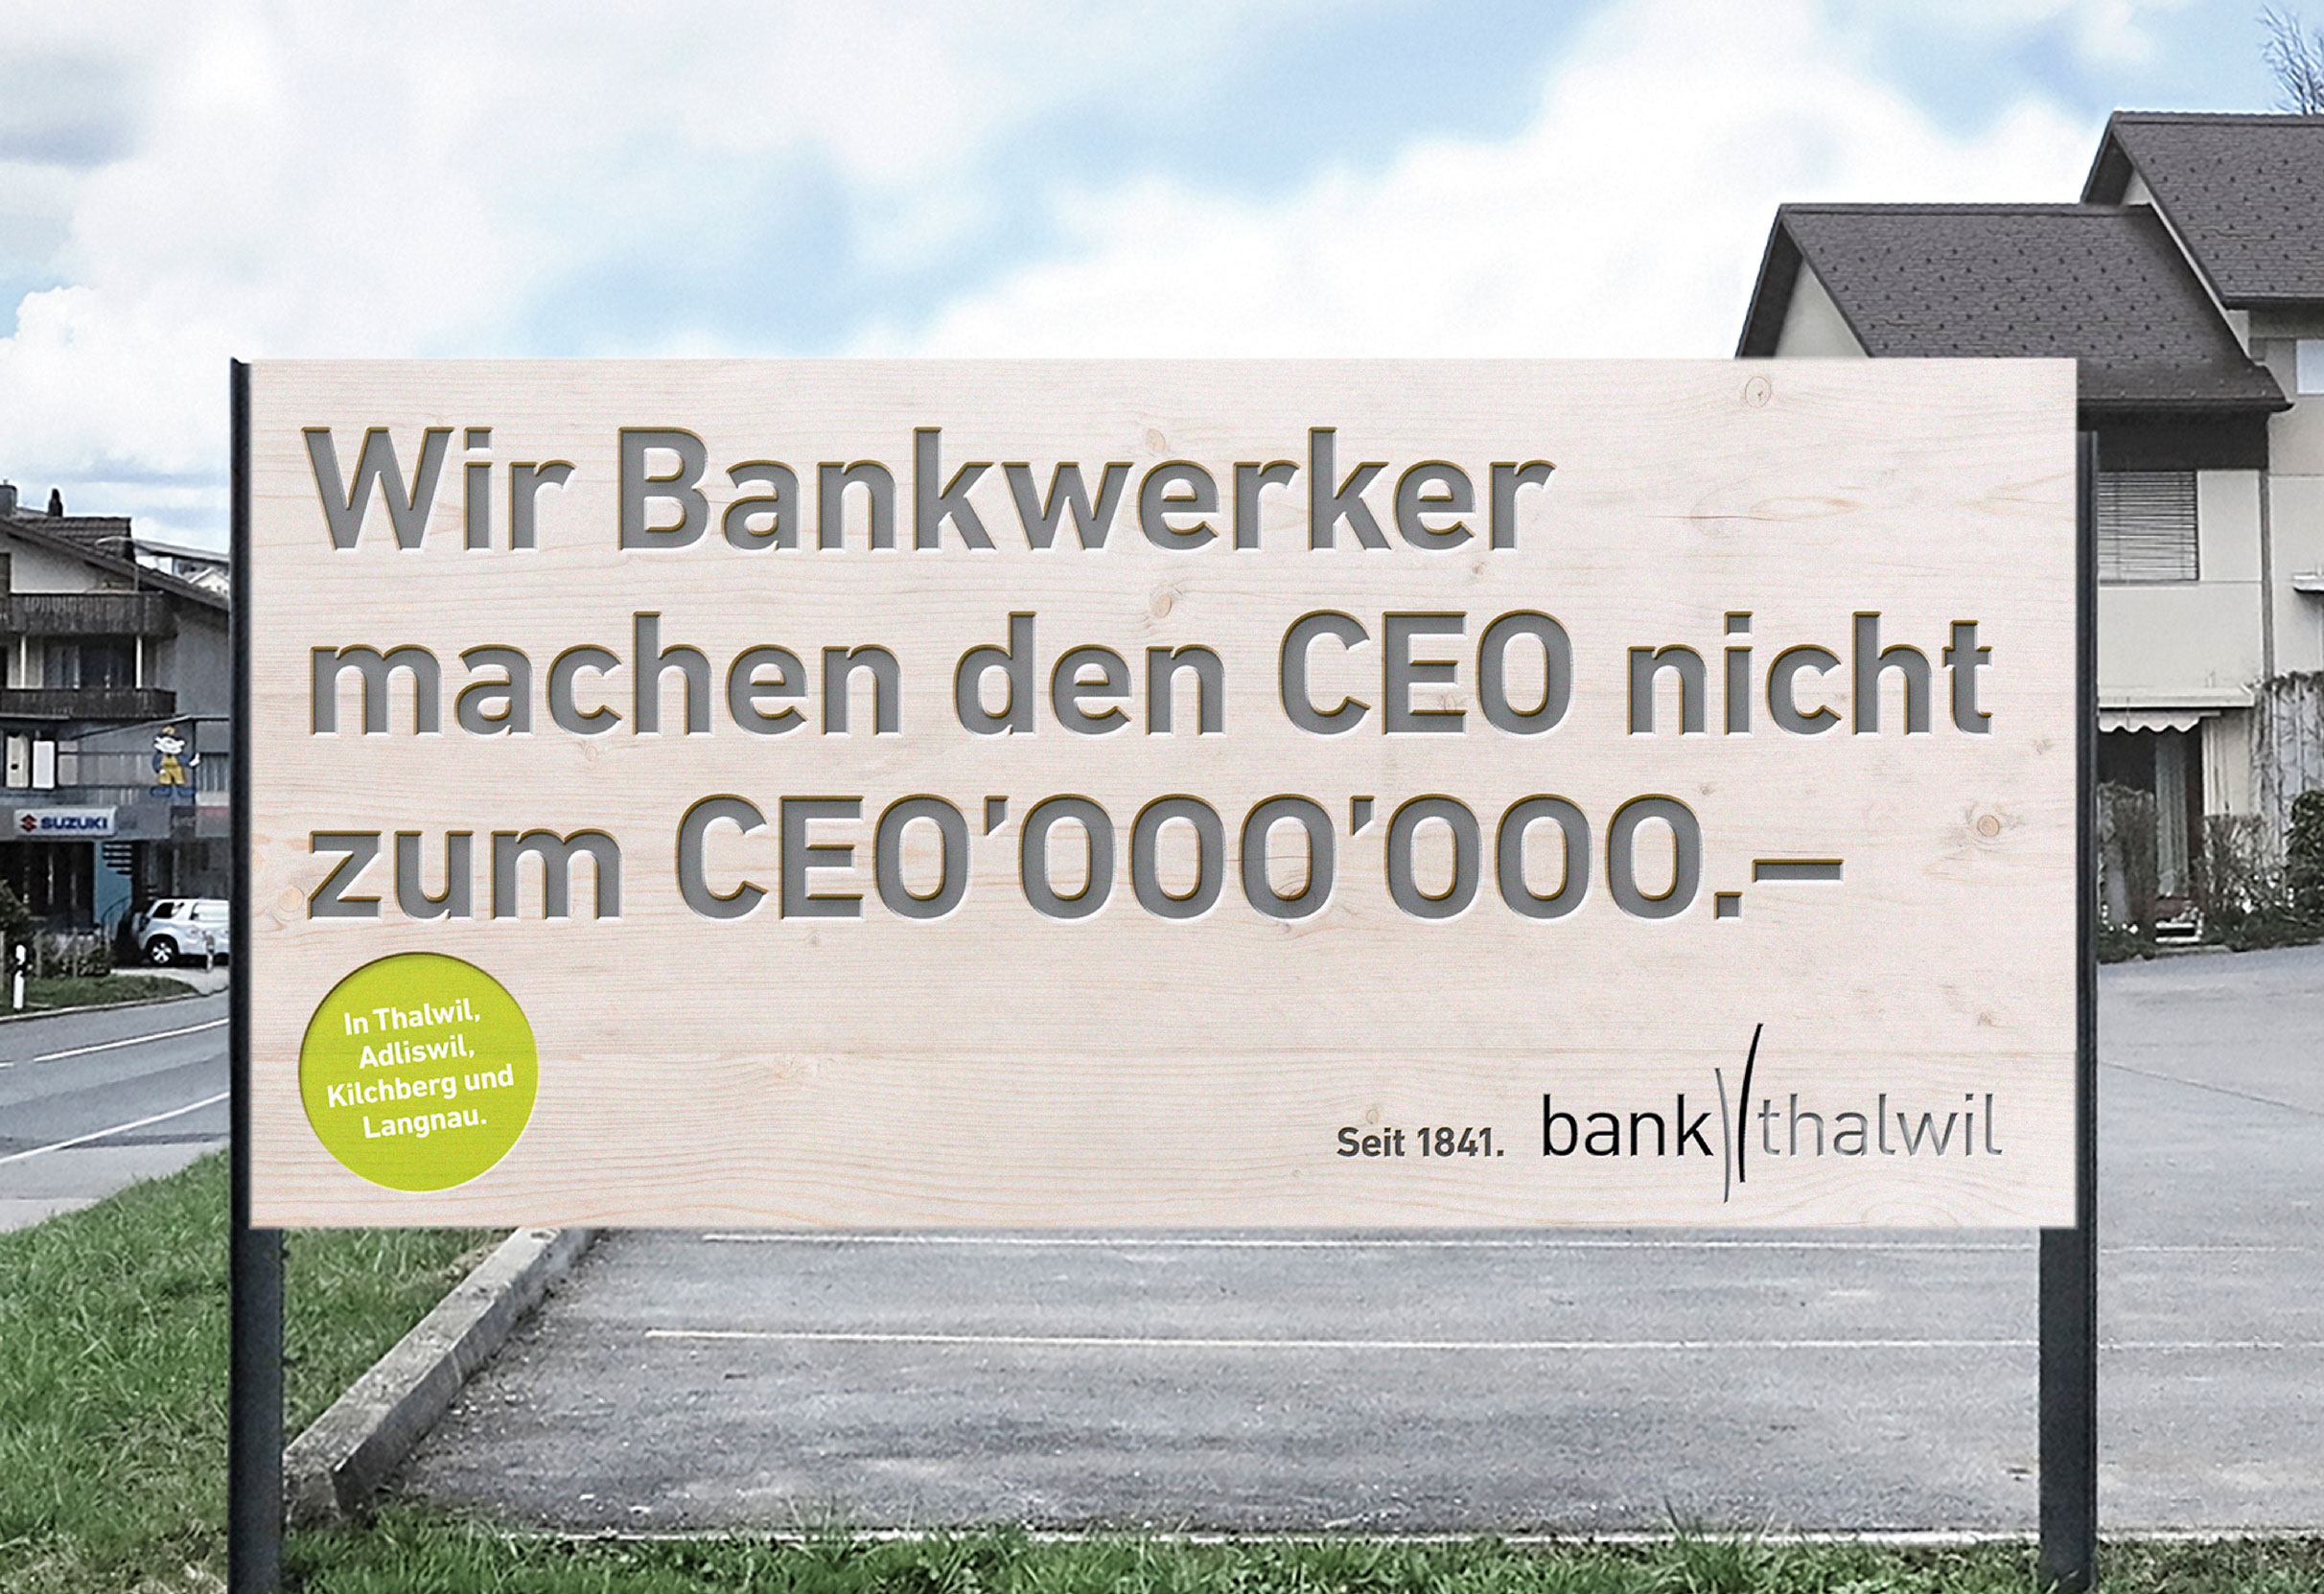 Wir Bankwerker machen den CEO nicht zum CE0'000'000.–